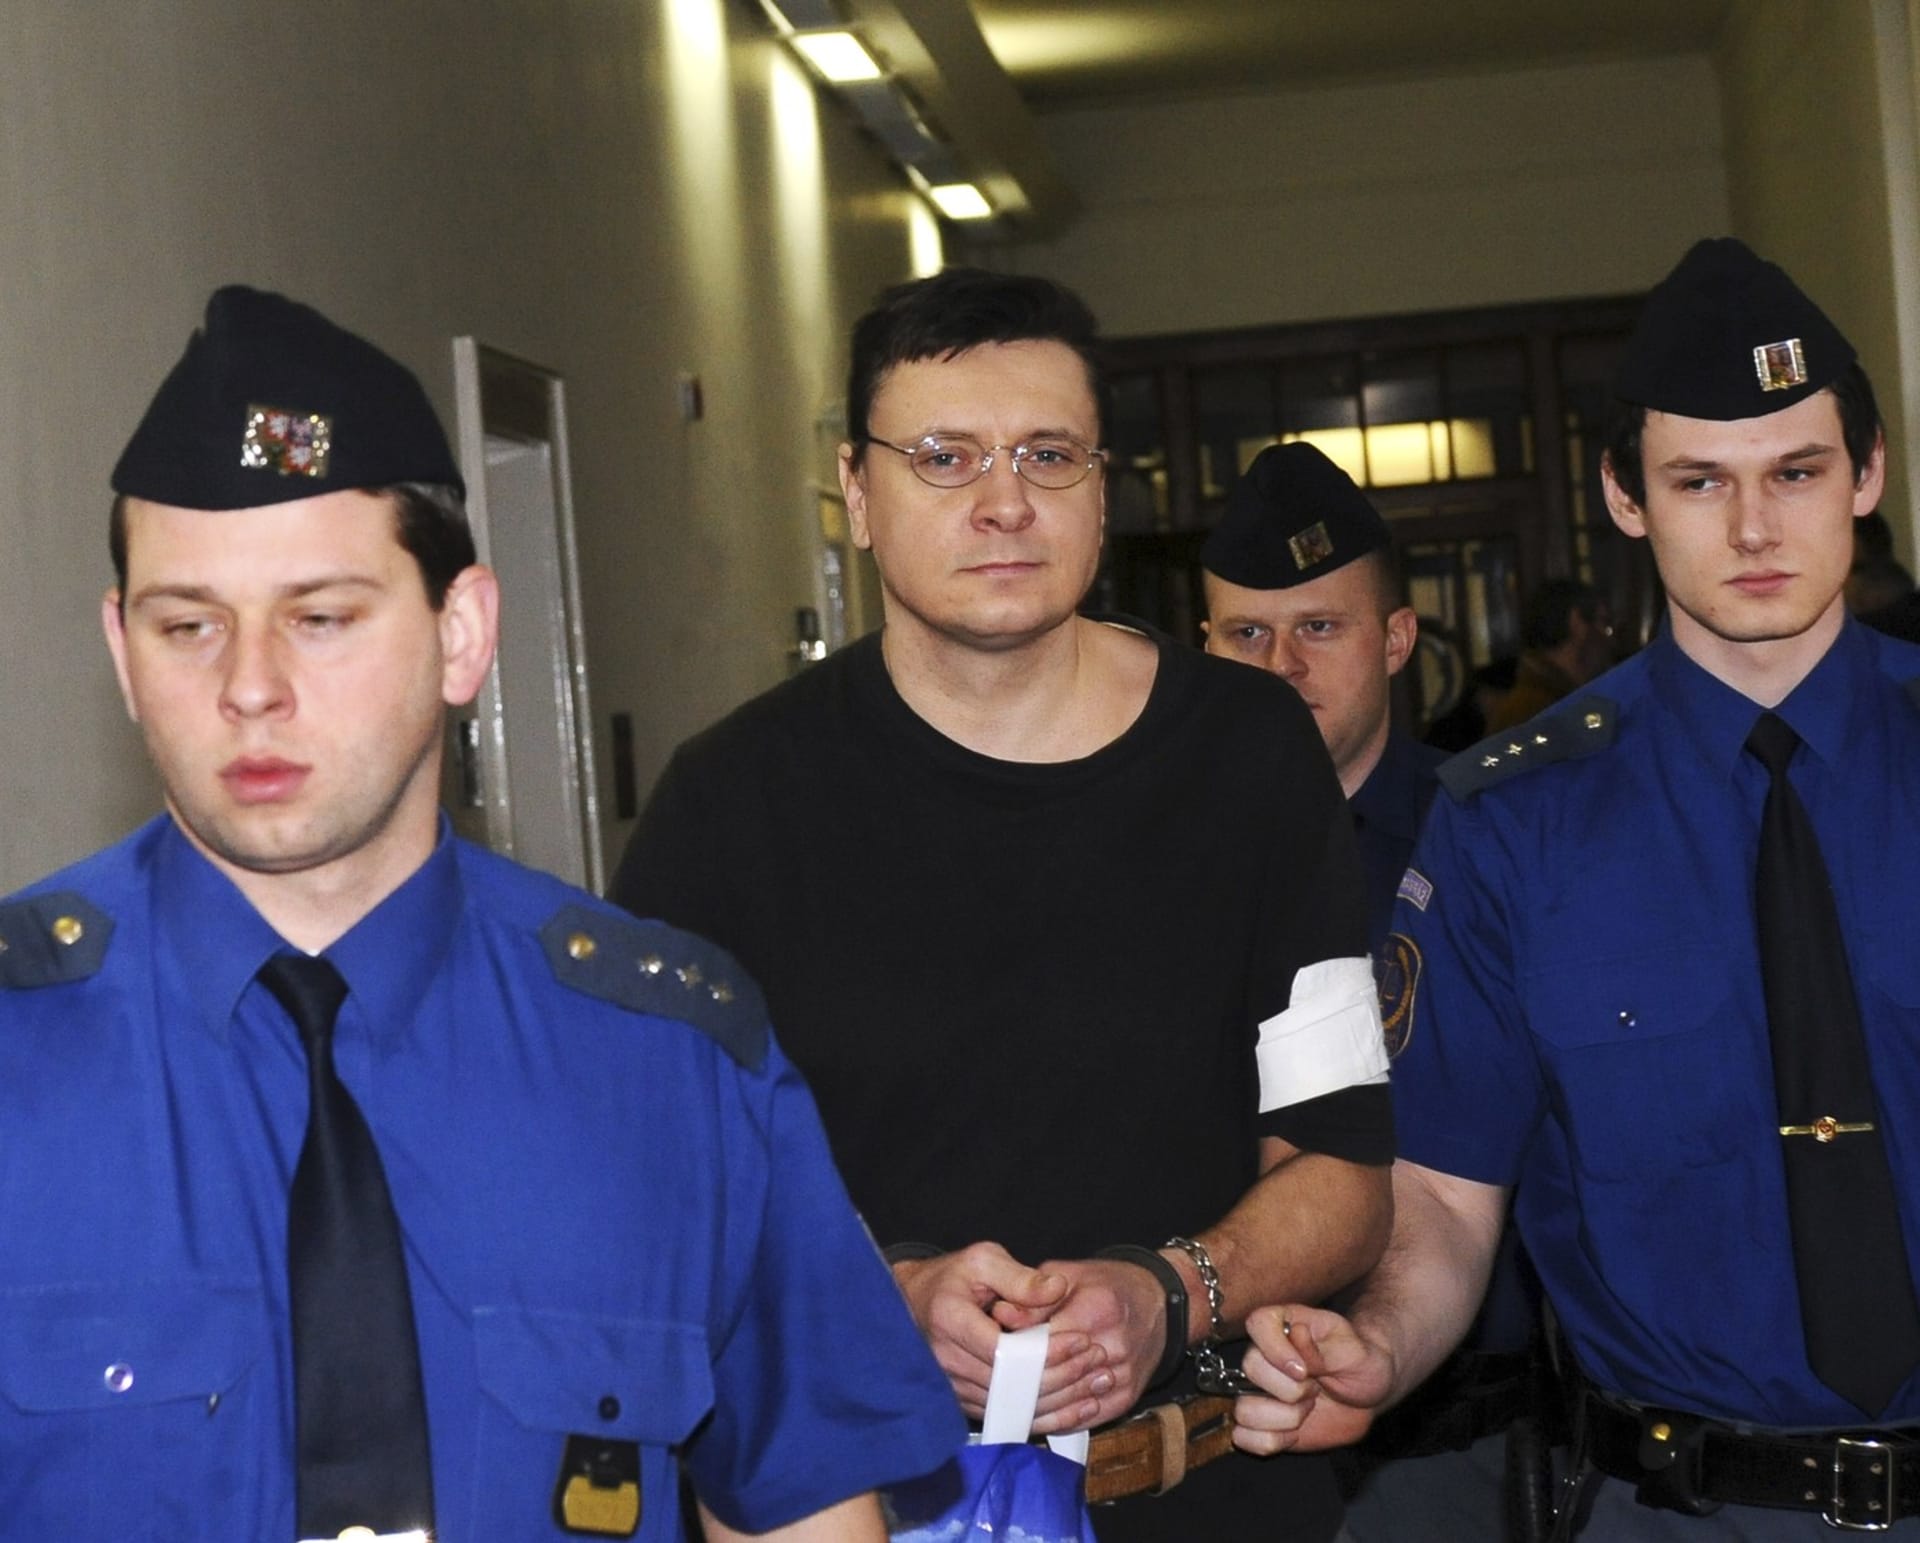 U Vrchního soudu v Praze se 10. února 2010 uskutečnilo odvolací jednání v případu Jiřího Cimbála, jemuž královéhradecký krajský soud uložil doživotní trest vězení za brutální vraždu dvacetileté stopařky u Keteně na Jičínsku.